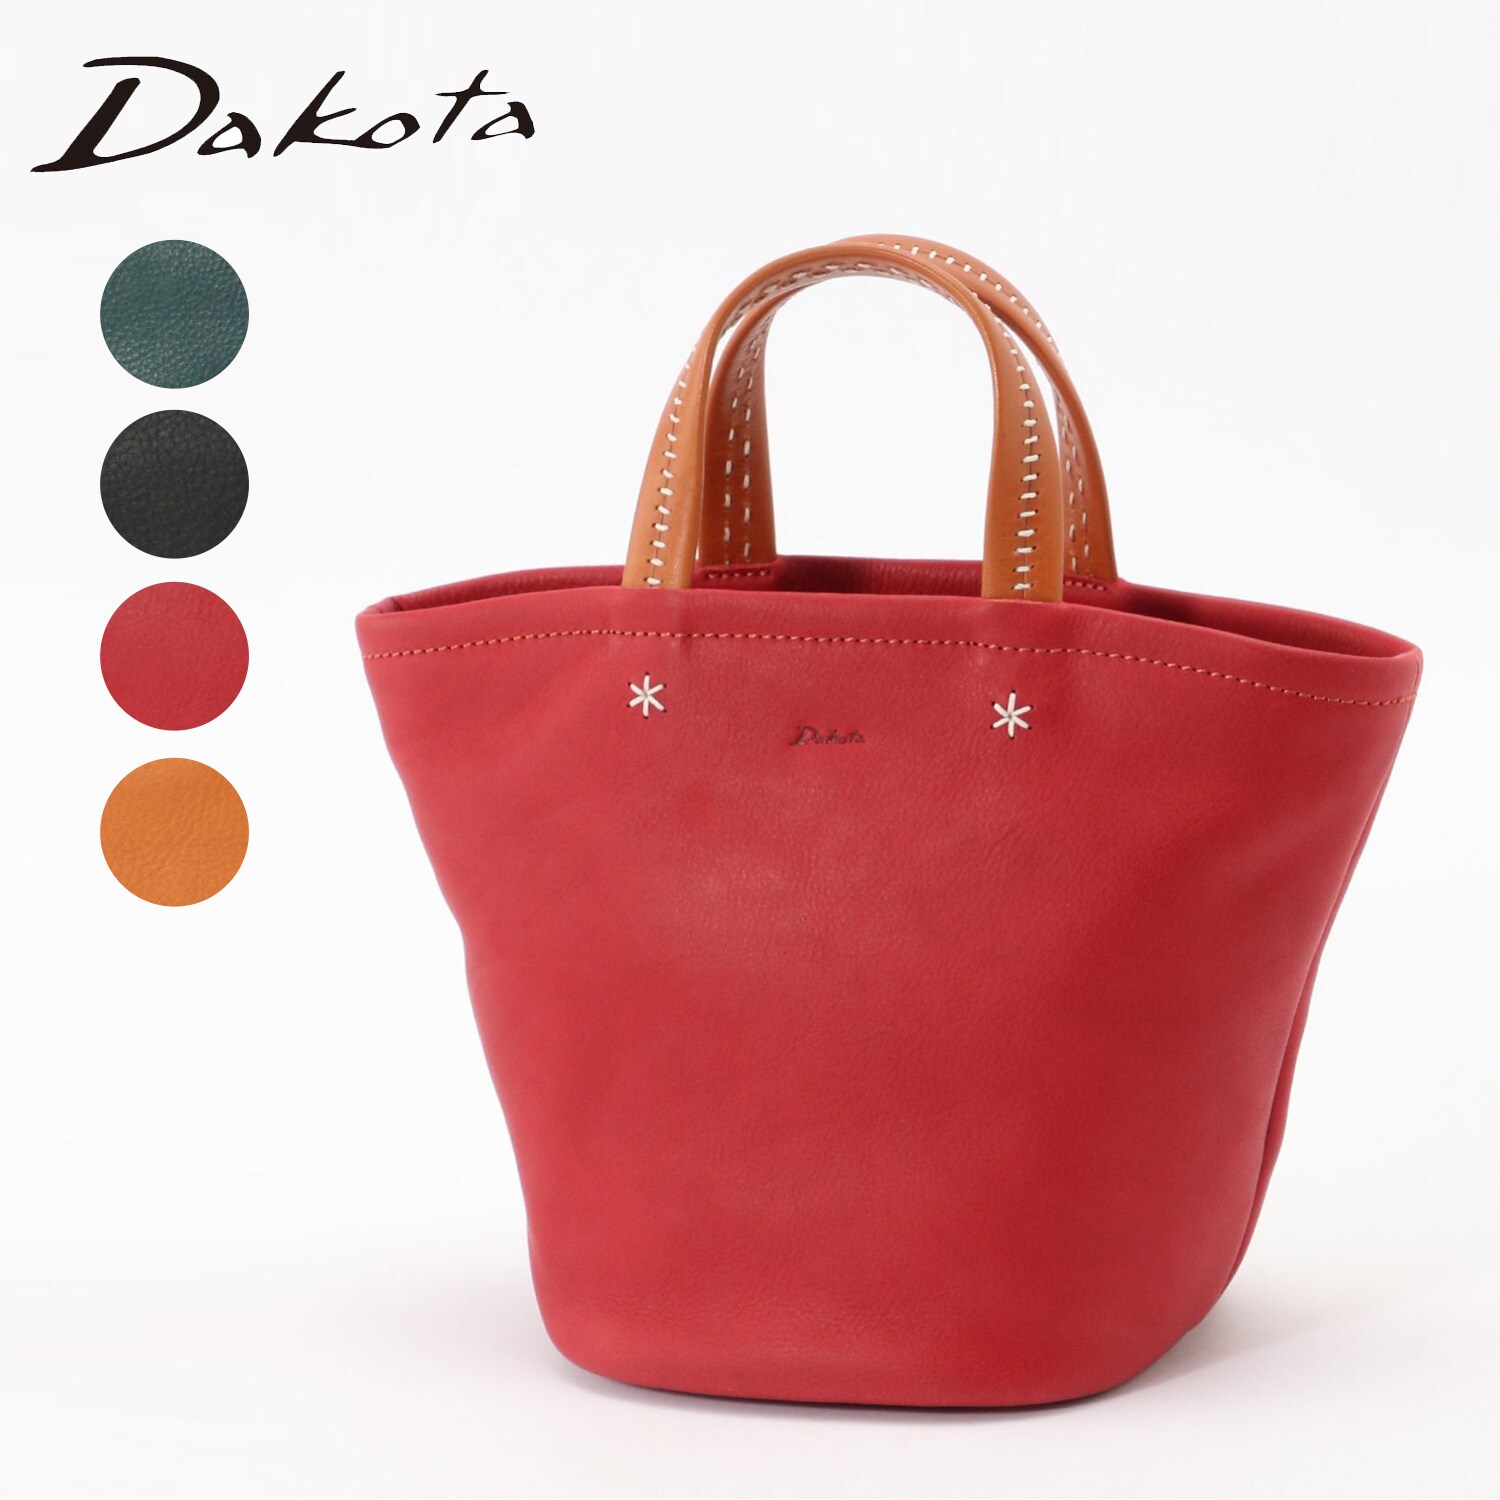 ダコタ Dakota トートバッグ レザー 刺繍 赤 レッド 鞄28cmマチ